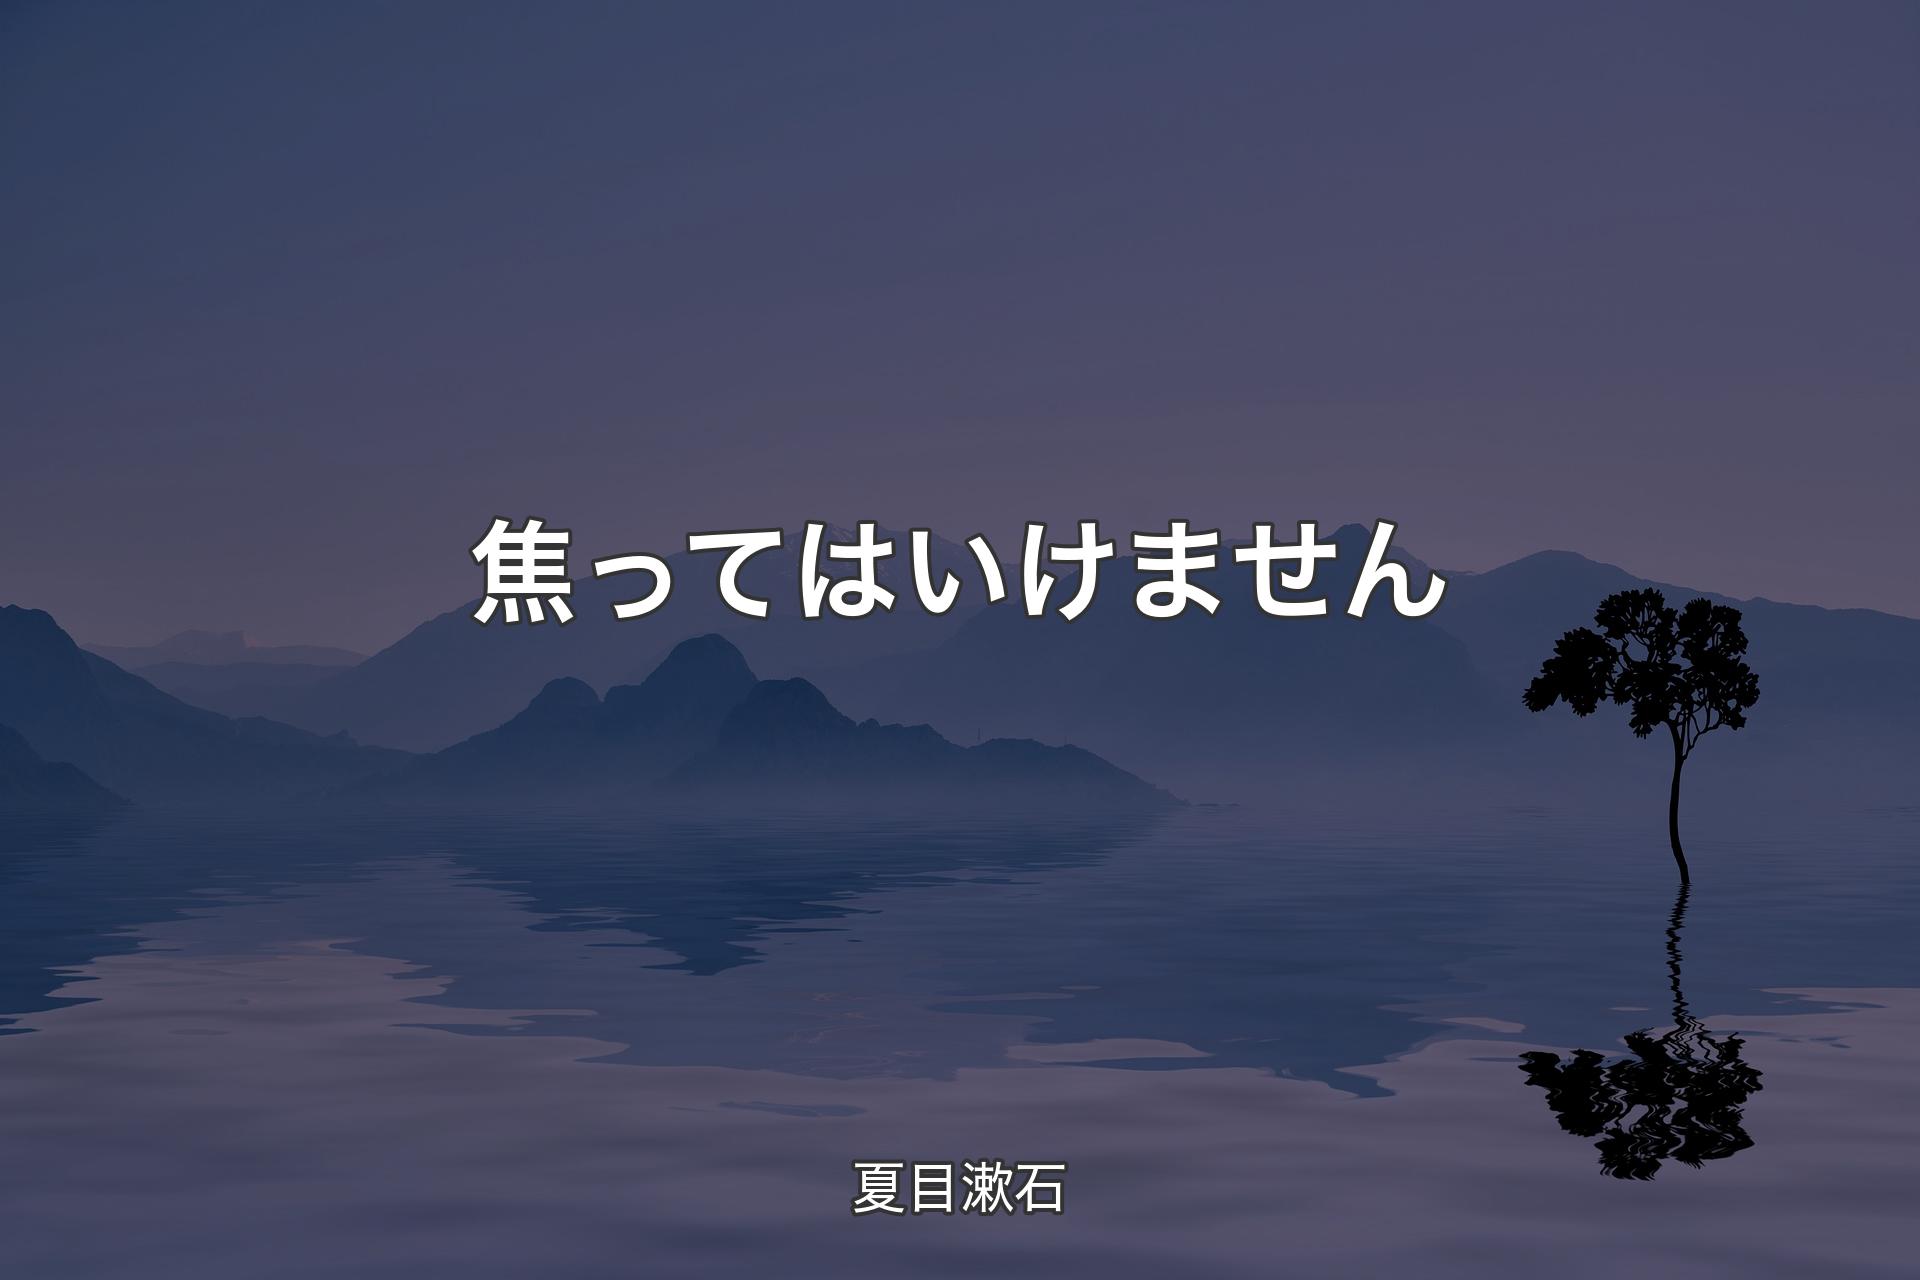 【背景4】焦ってはいけません - 夏目漱石